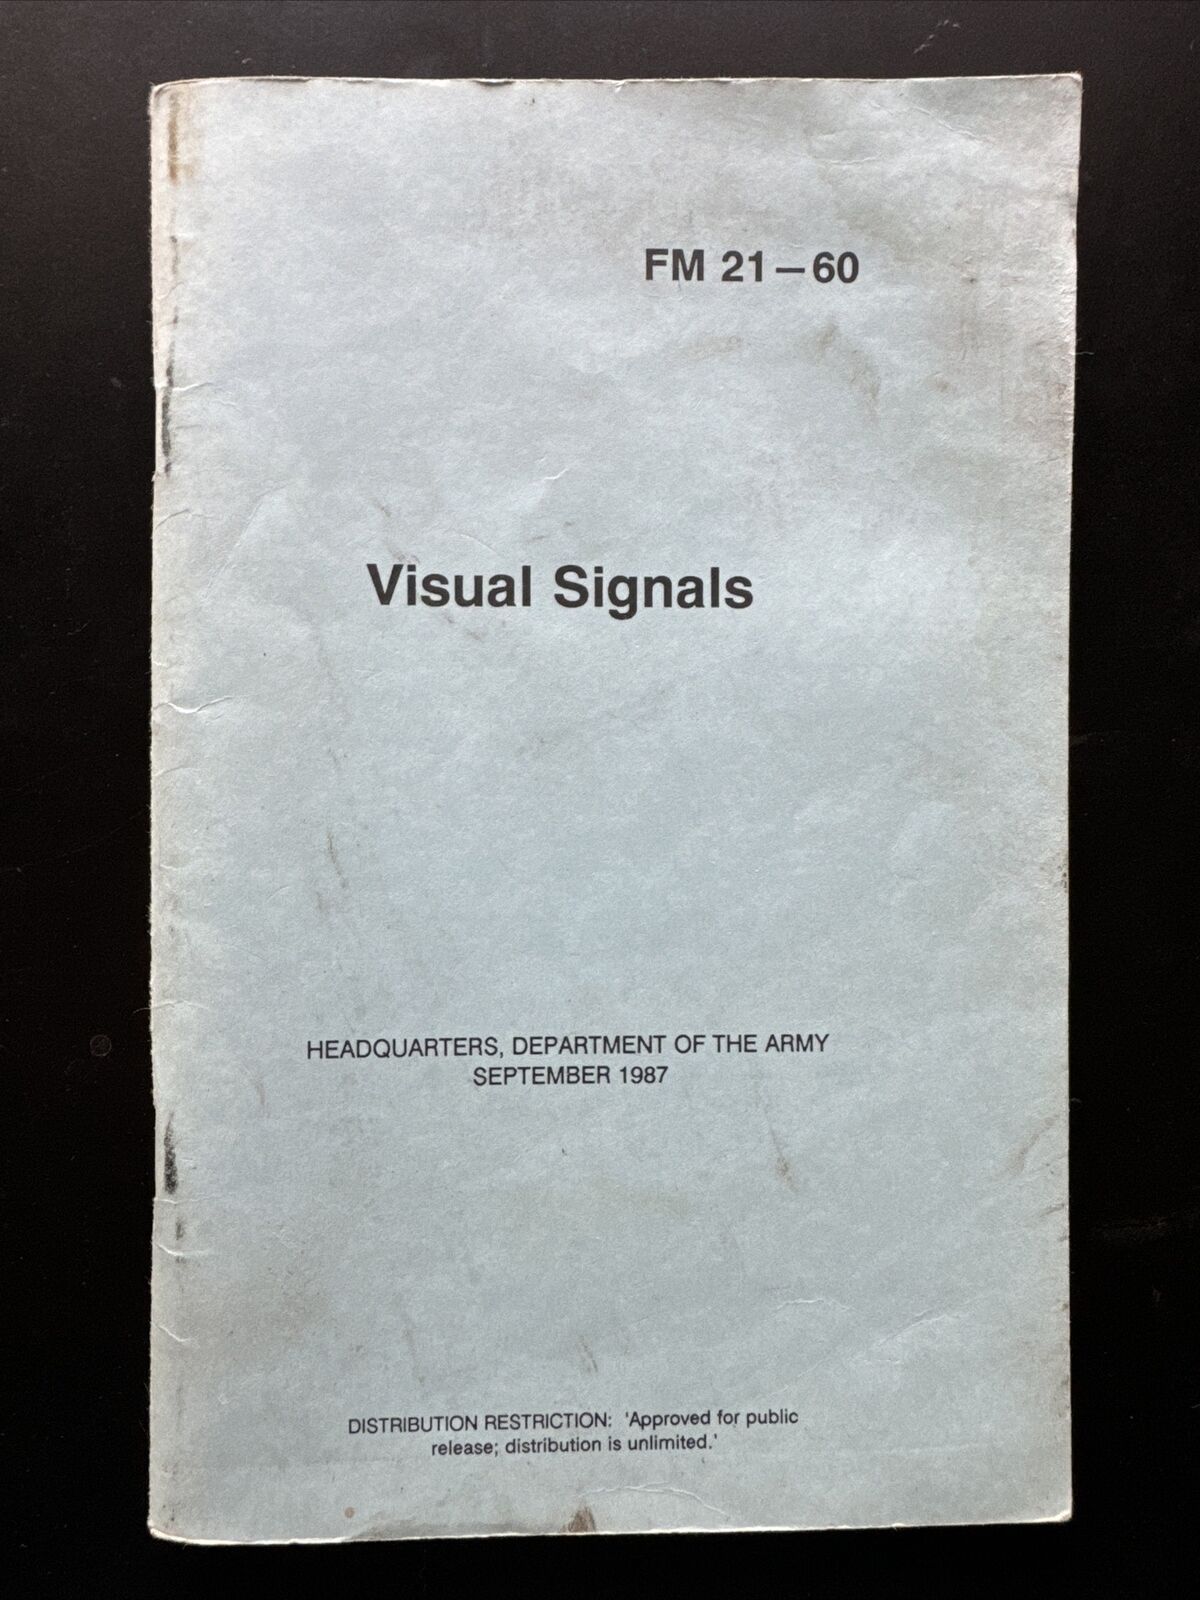 Visual Signals Manual FM 21-60